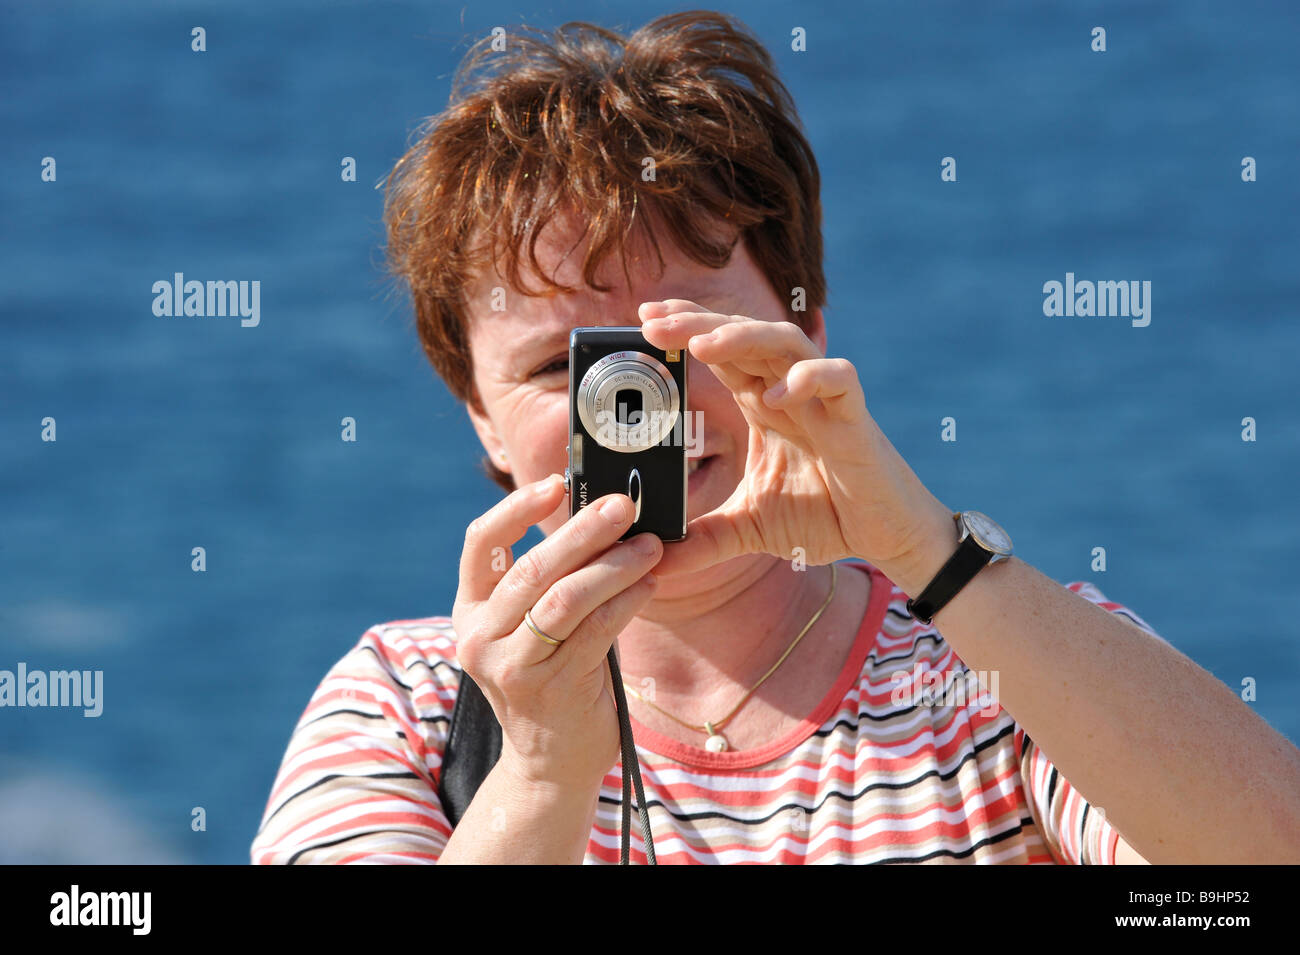 Femme de prendre une photo avec un appareil photo numérique Lumix Banque D'Images